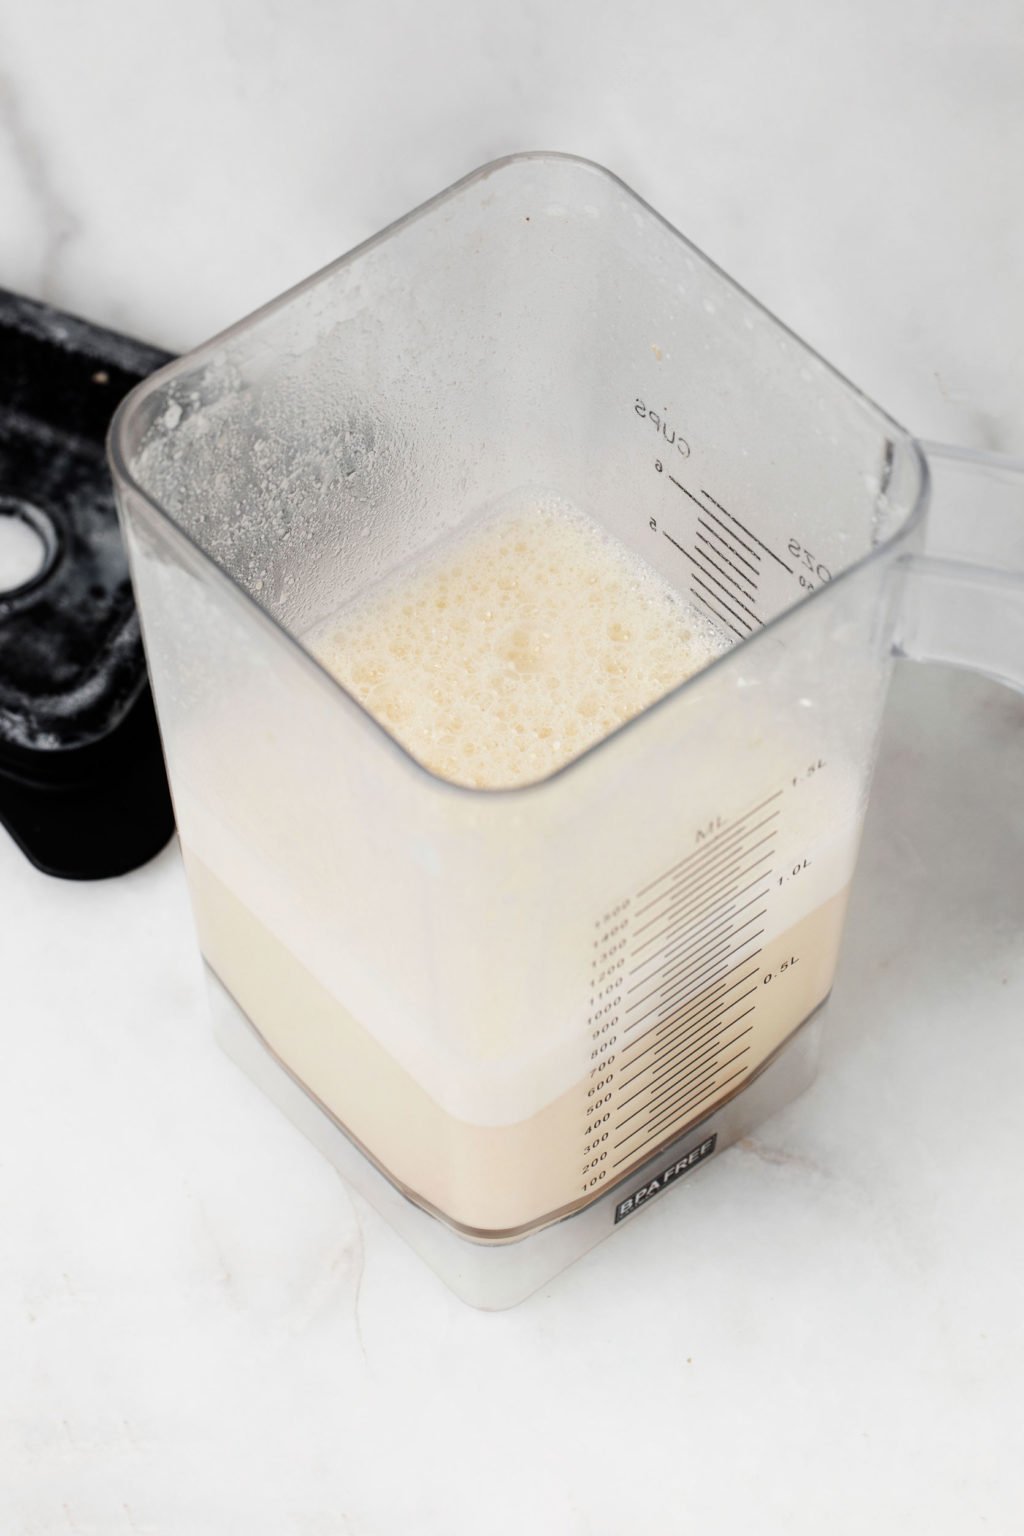 Una batidora contiene leche no láctea.  Reposa sobre una superficie de mármol blanco.